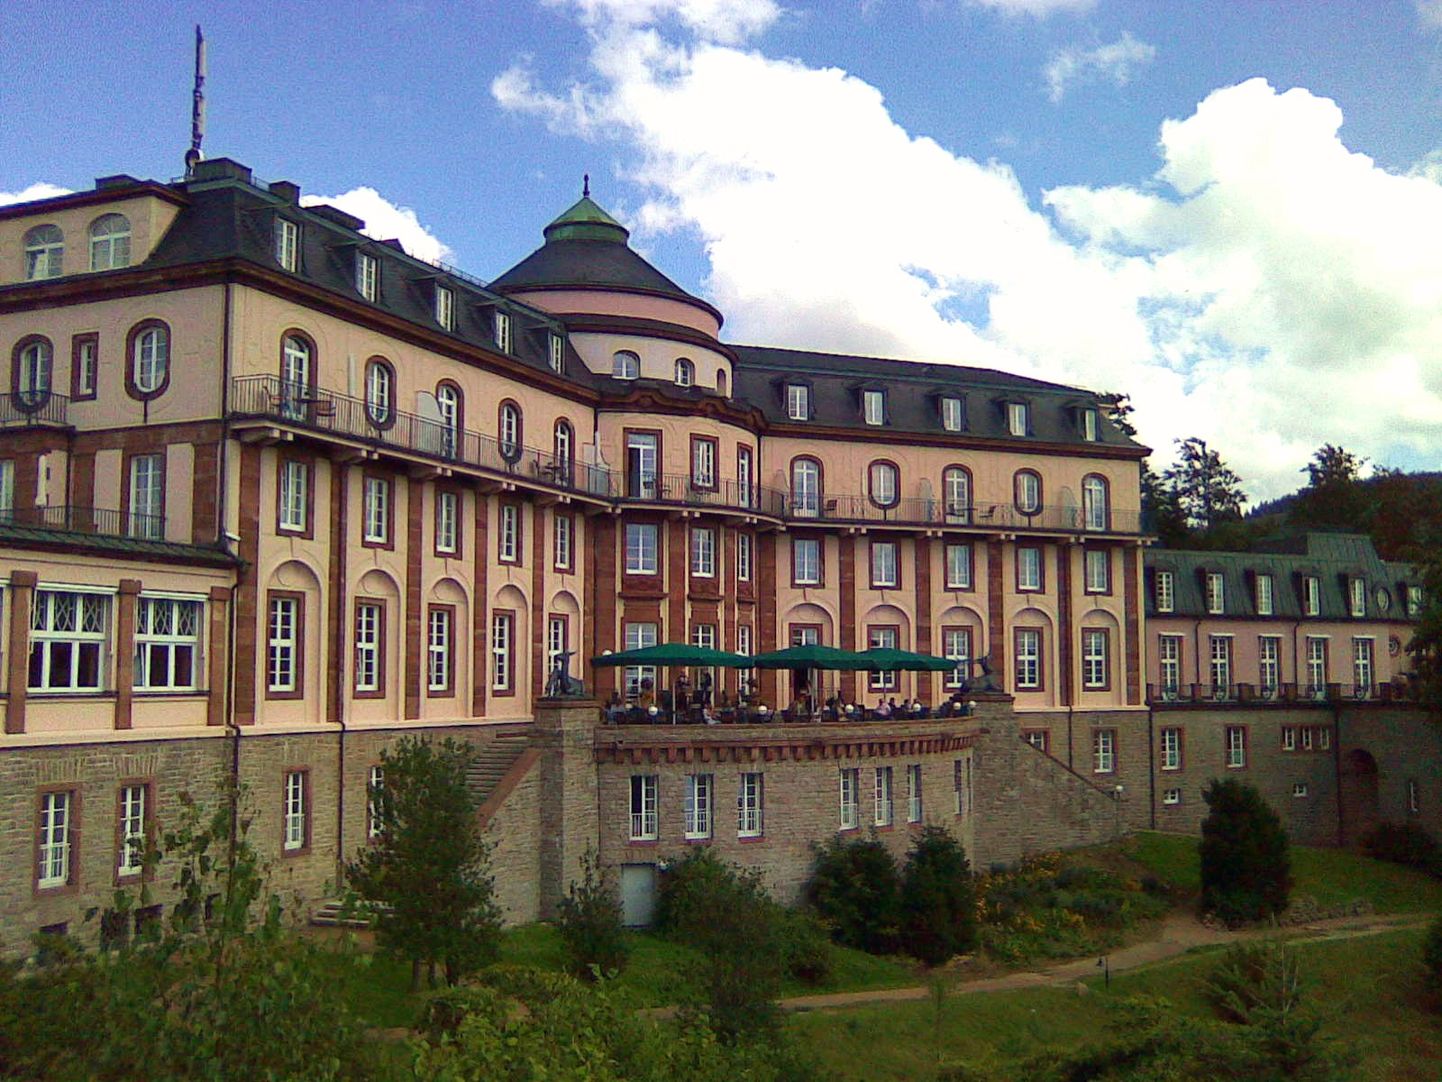 RAHVUSLIK MÄLESTUSMÄRK: Saksamaal Baden-Badeni lähistel asuv Bühlerhöhe loss-hotell omab paljud sakslaste jaoks ajaloolist tähendust, sest kunagi meeldis seal puhata kaasaja Saksamaa esimesel kantsleril Konrad Adenaueril. Nüüd on aga hotelli omanikud Kasahstani endise presidendi pereliikmed.